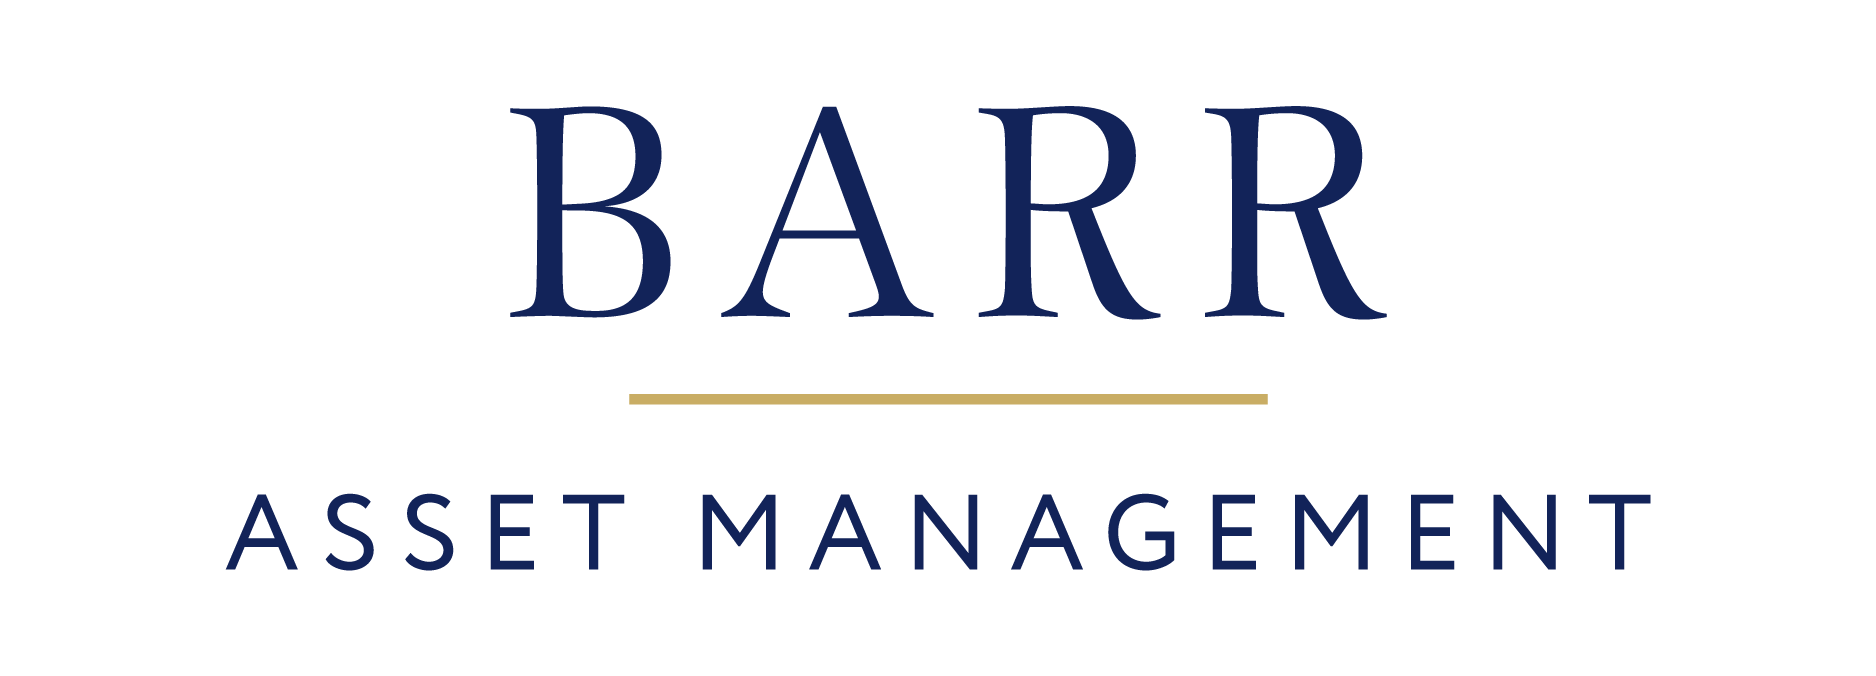 Barr Asset Management 